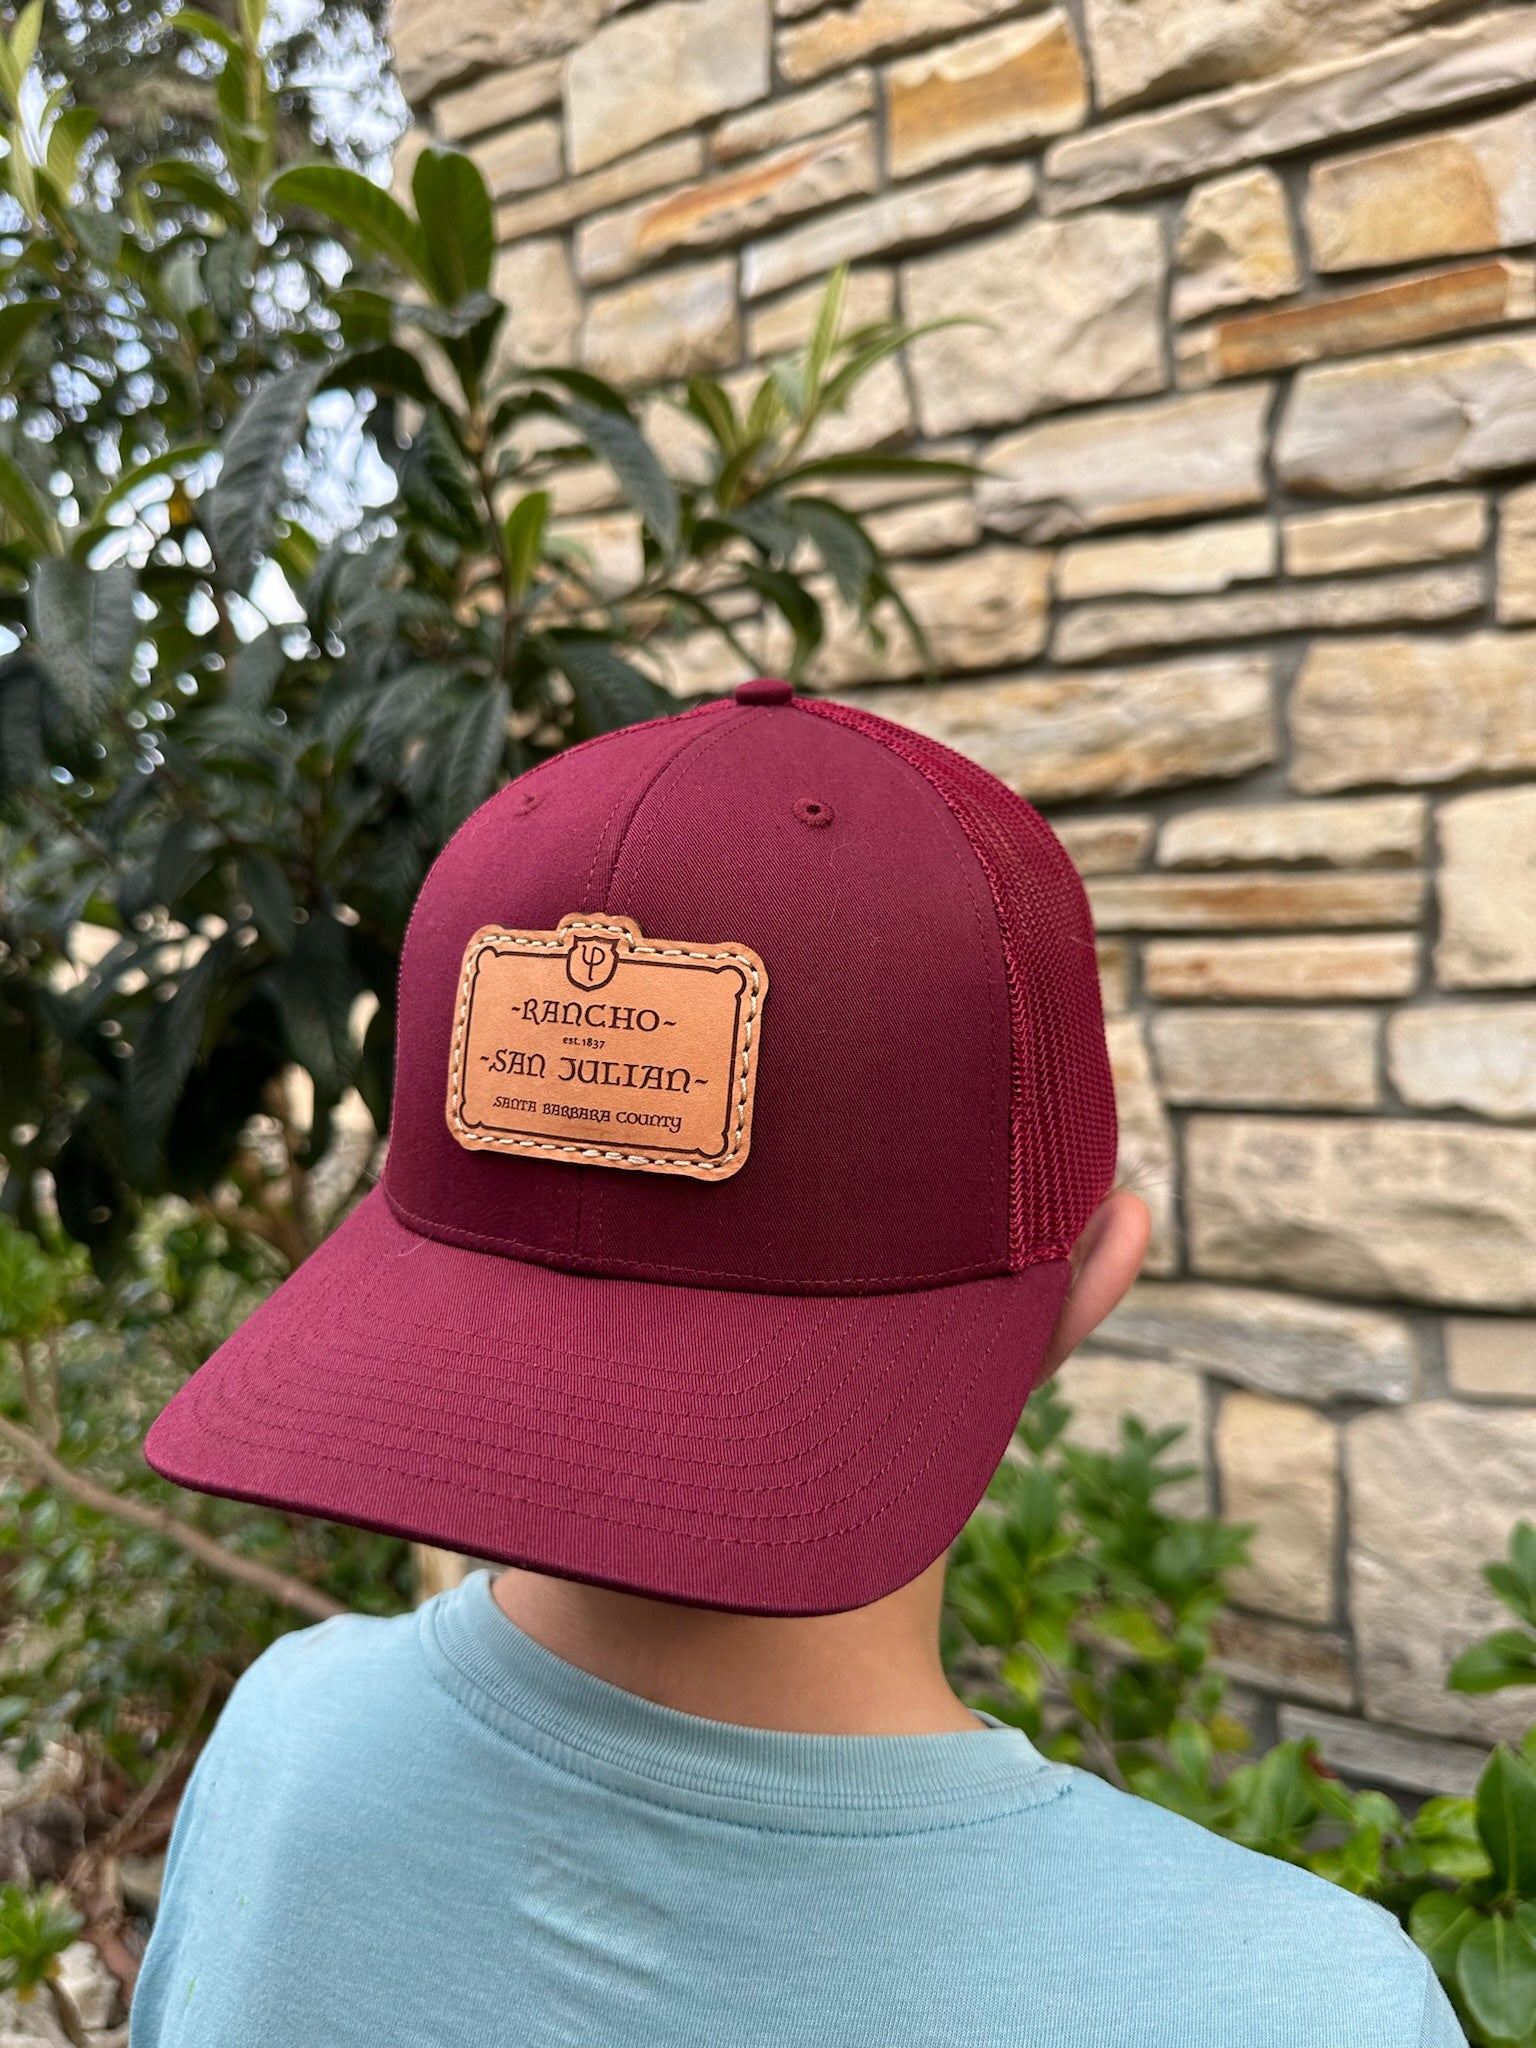 Rancho San Julian Hats Maroon